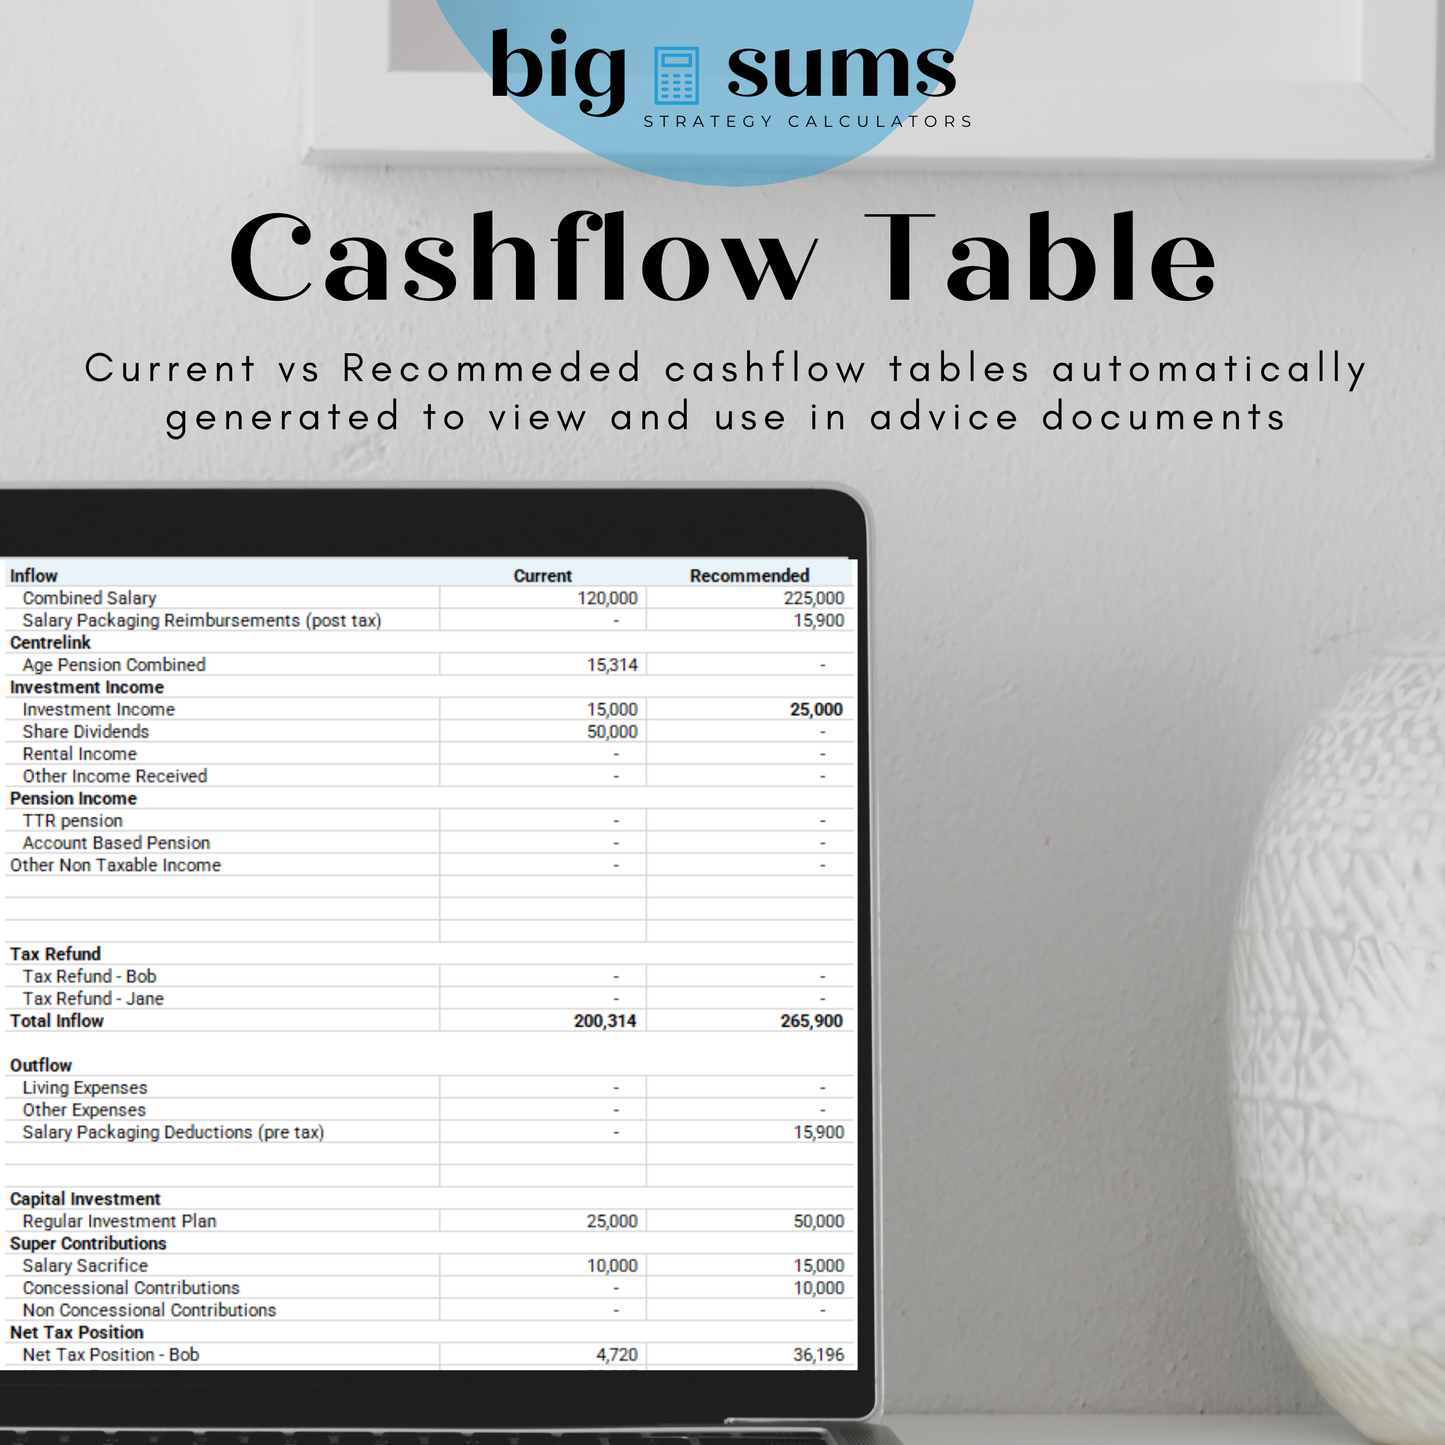 Cashflow & Tax Calculator - FY23/24